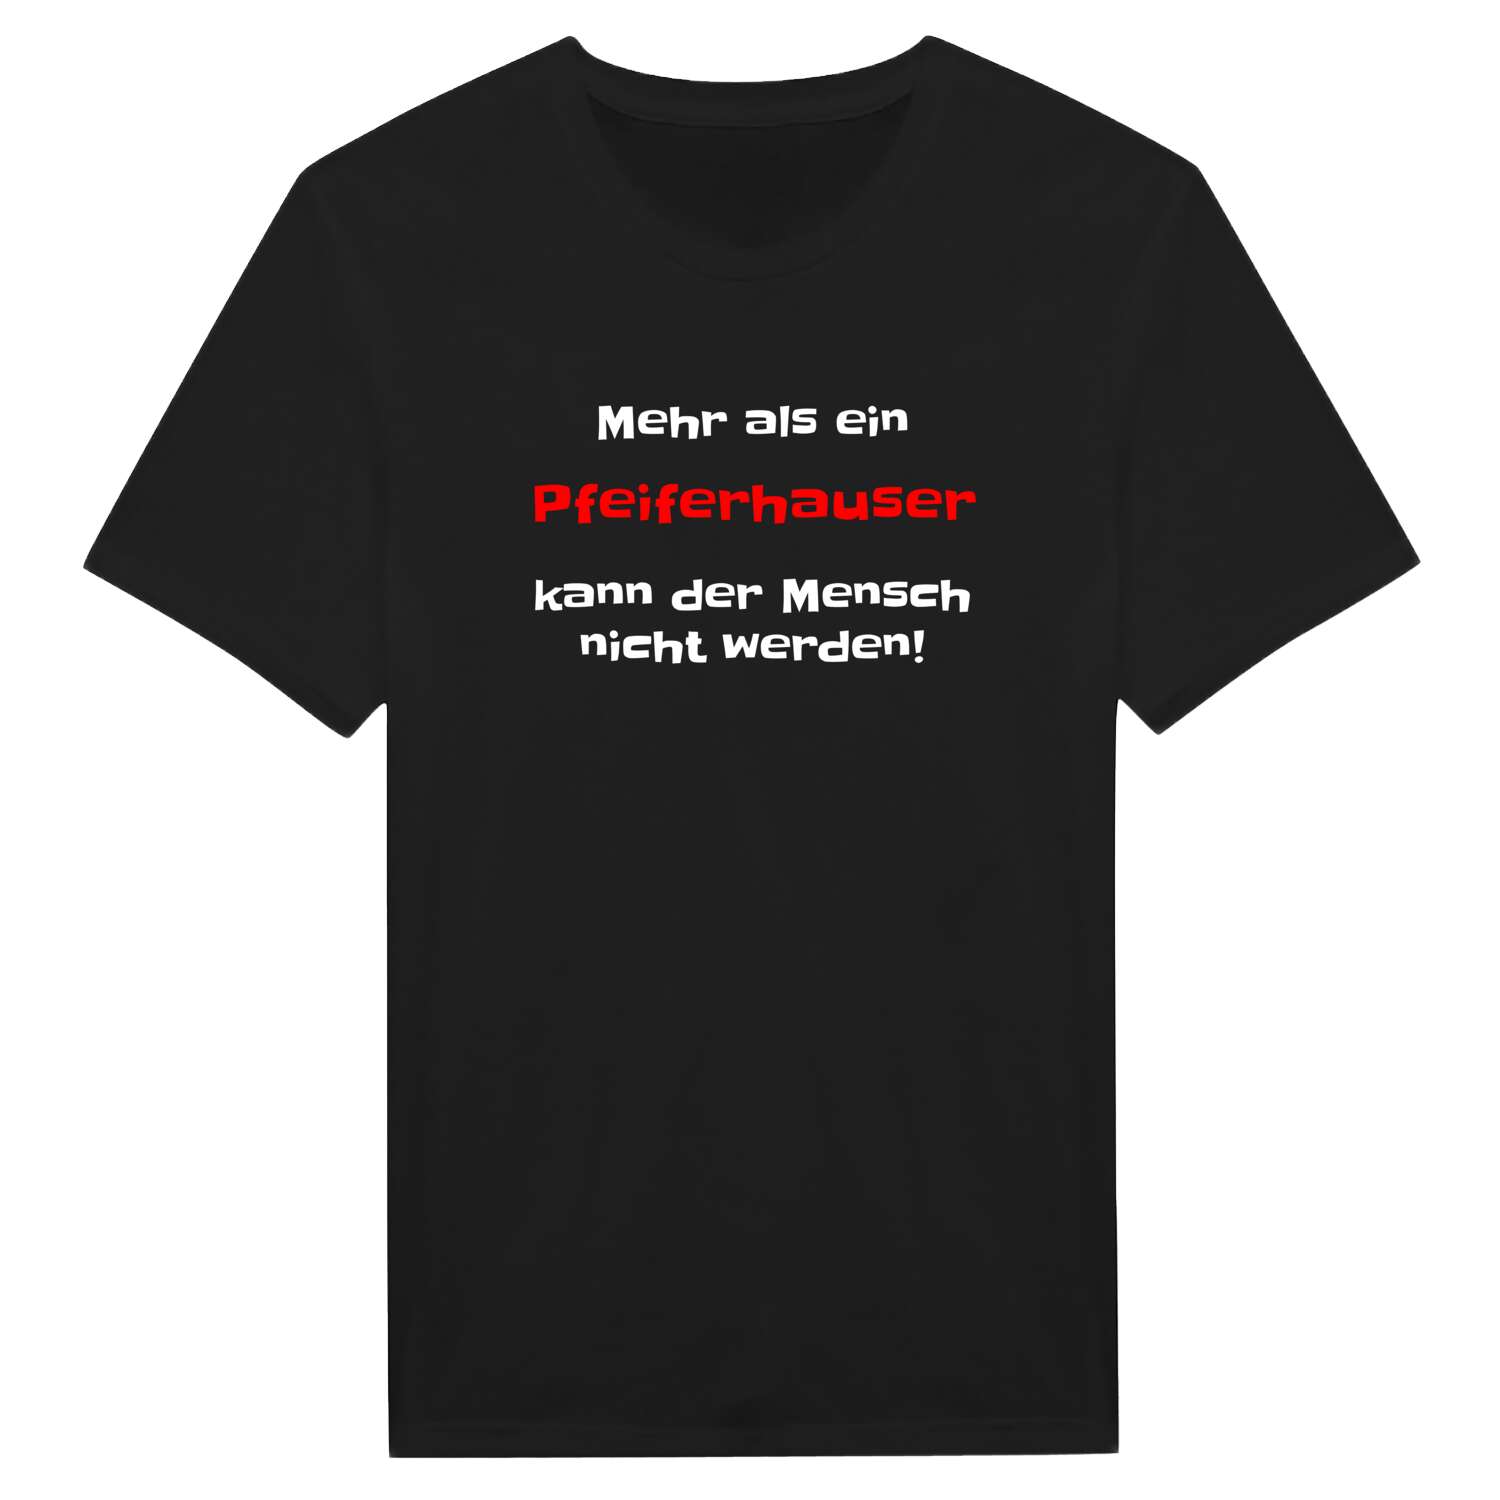 Pfeiferhaus T-Shirt »Mehr als ein«